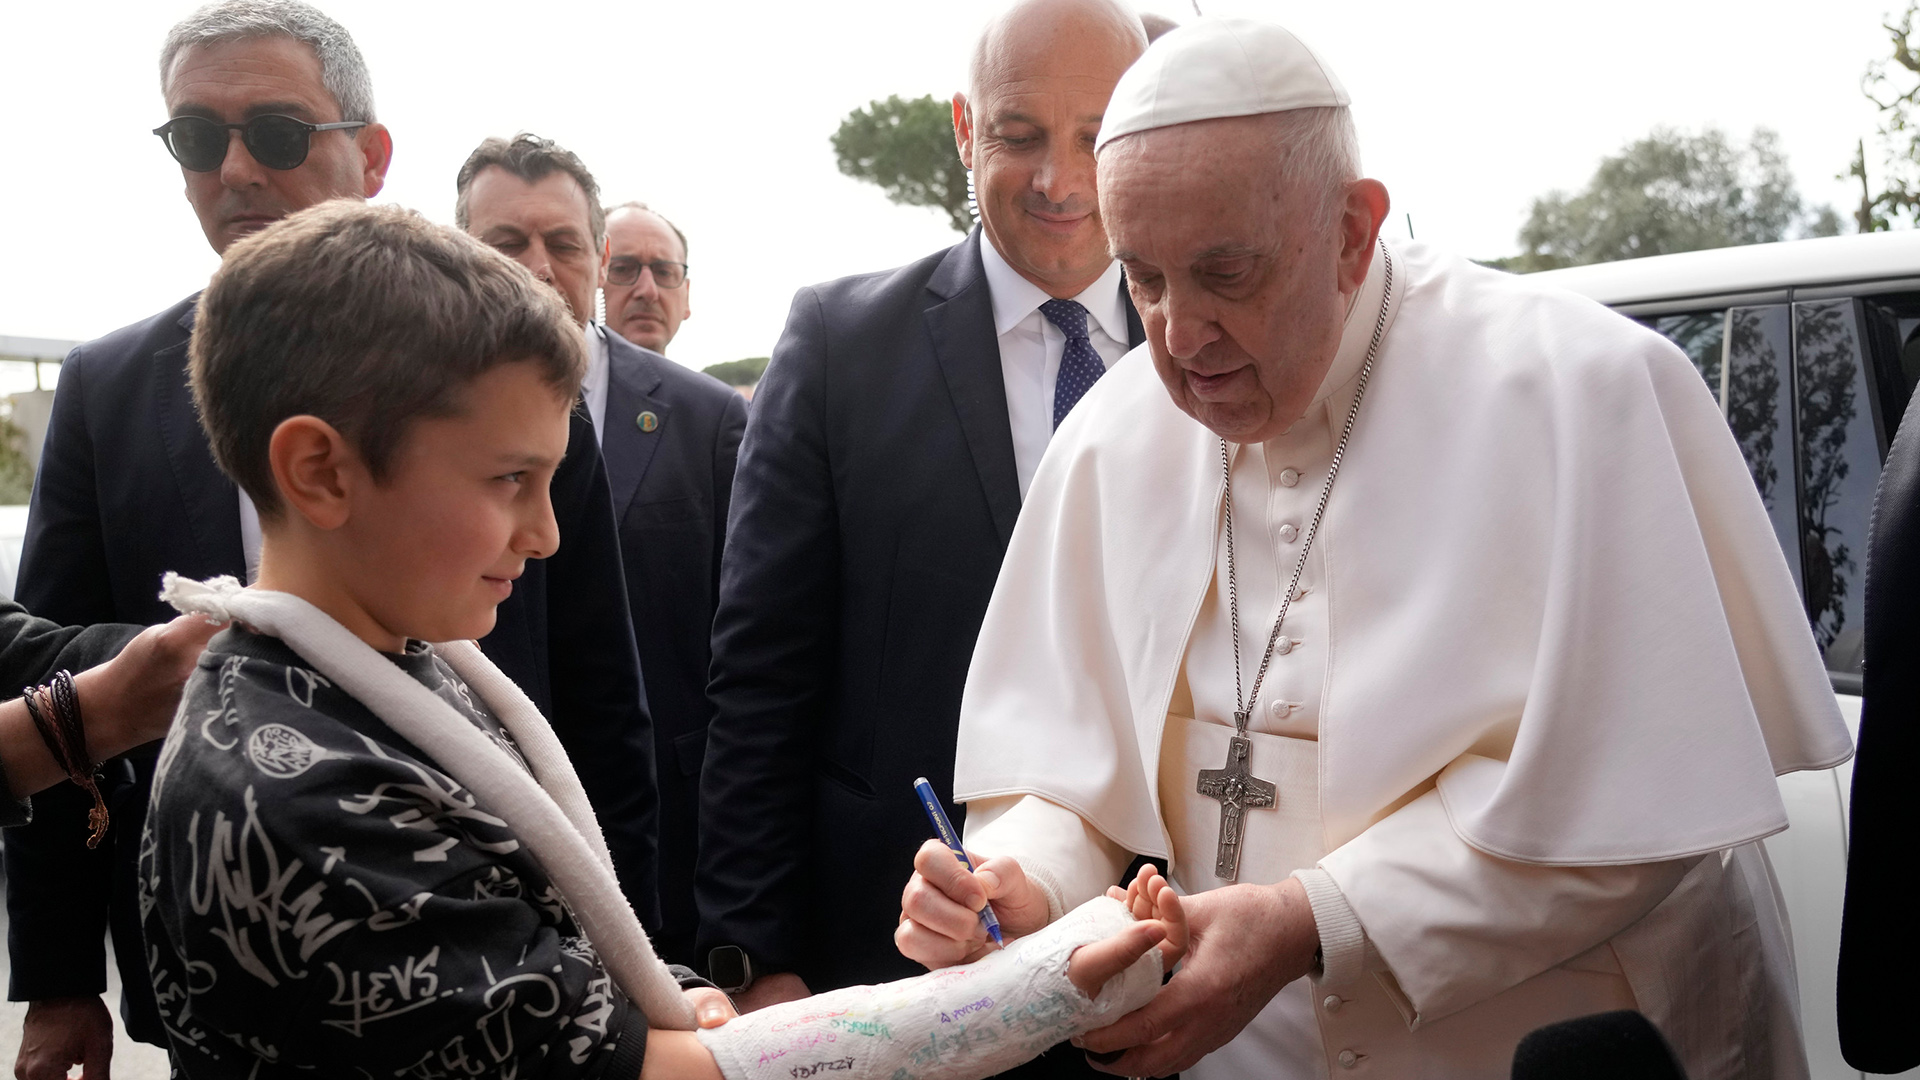 Papst Franziskus unterschreibt auf dem Gipsarm eines Jungen beim Verlassen des Krankenhauses.